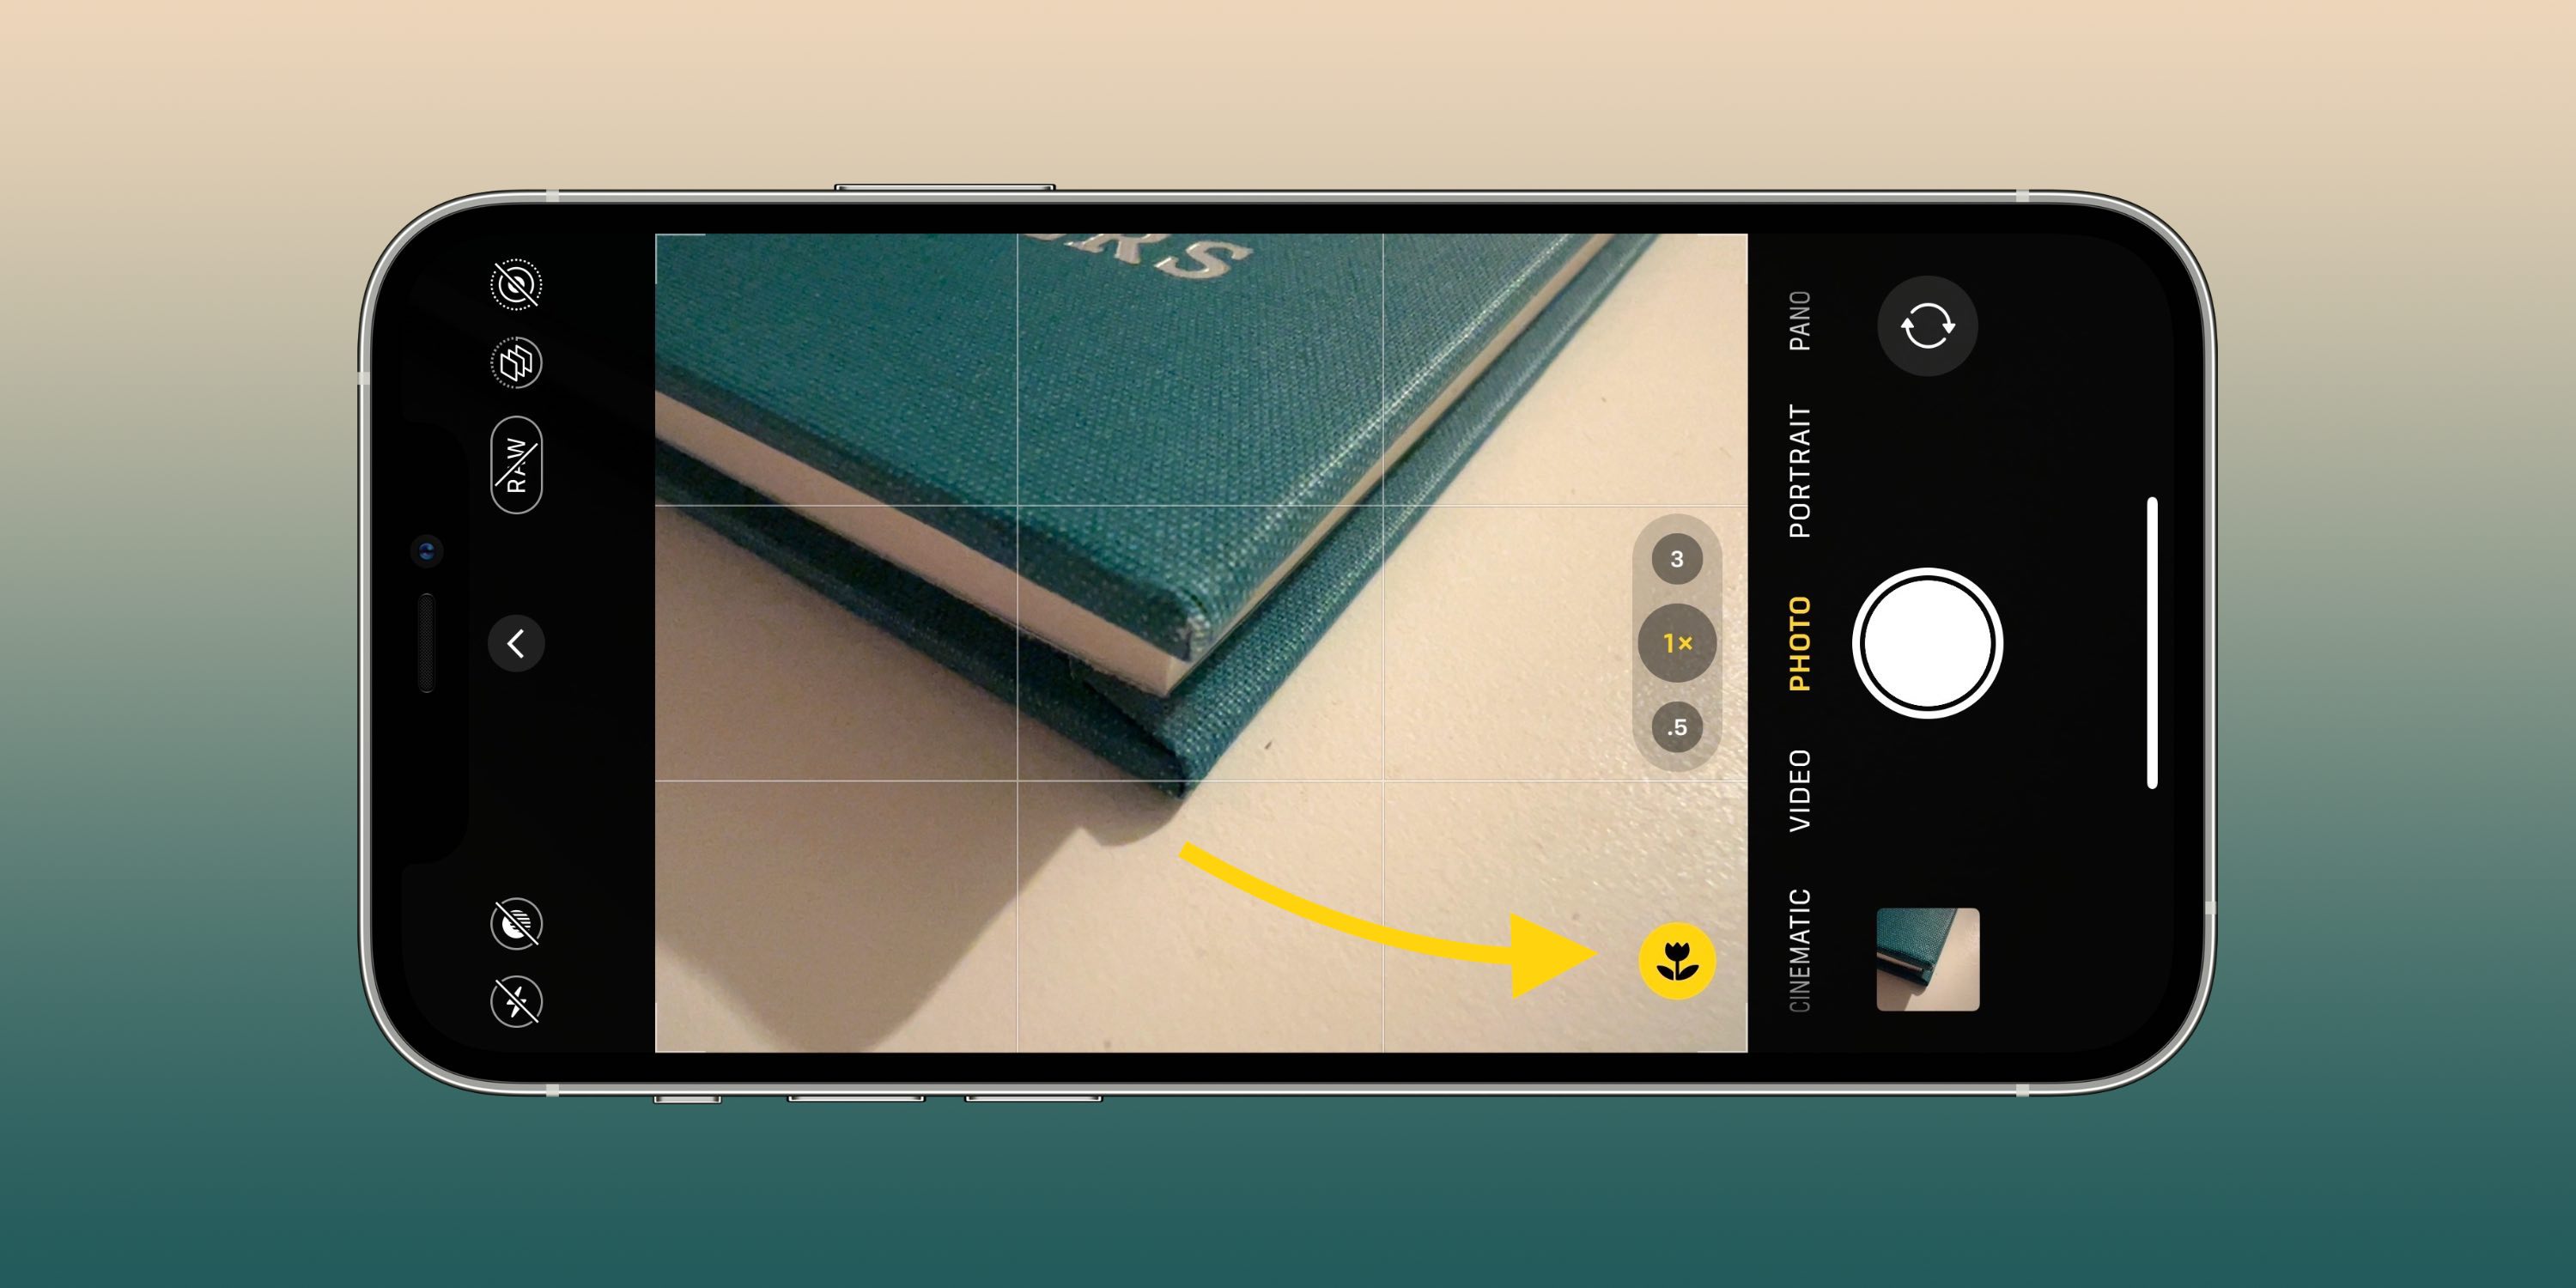 Met deze camera-instellingen kunt u betere foto's en video's maken op uw iPhone